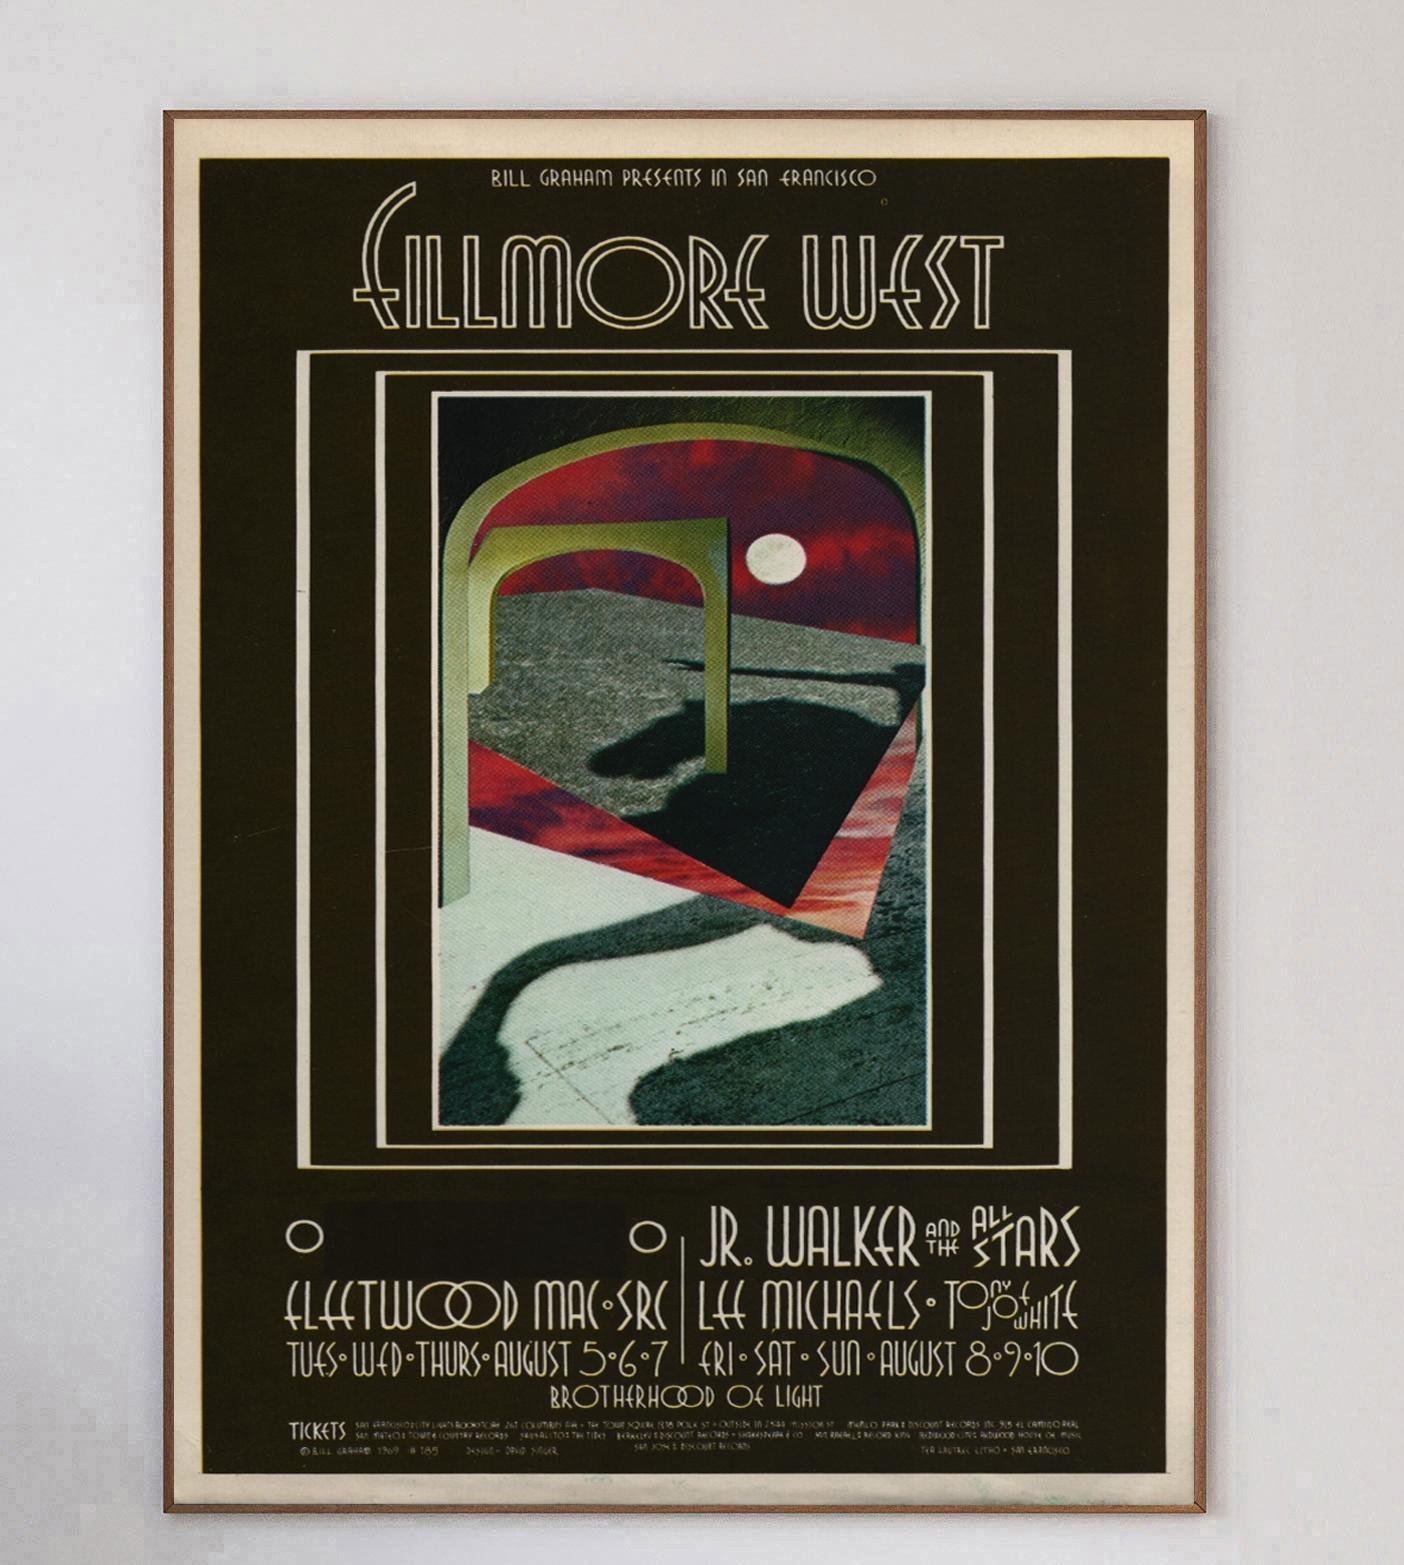 Conçue par l'artiste David Singer, cette magnifique affiche a été créée en 1969 pour promouvoir un concert de Fleetwood Mac au célèbre Fillmore West à San Francisco. Les événements organisés par Bill Graham comme celui-ci étaient bien connus pour